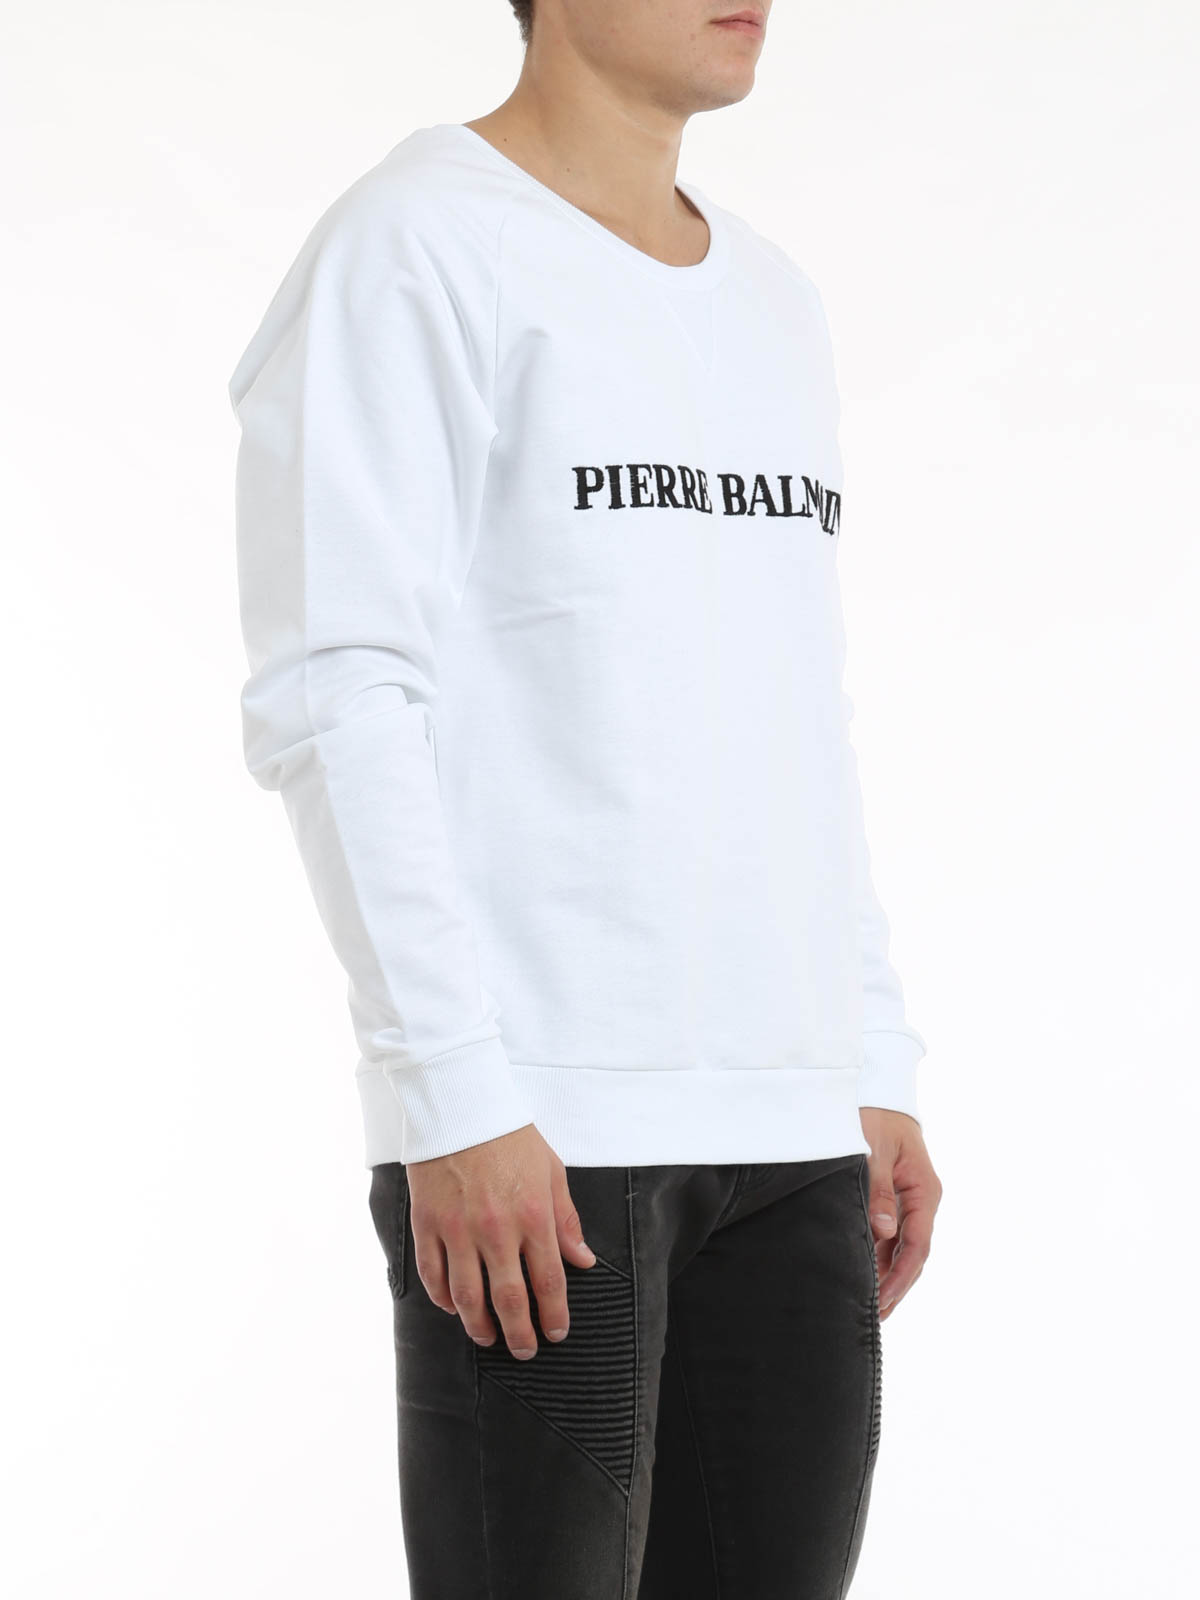 Minde om Helt vildt Synlig Sweatshirts und Pullover Pierre Balmain - Crew neck sweater with logo -  HP6380S1380